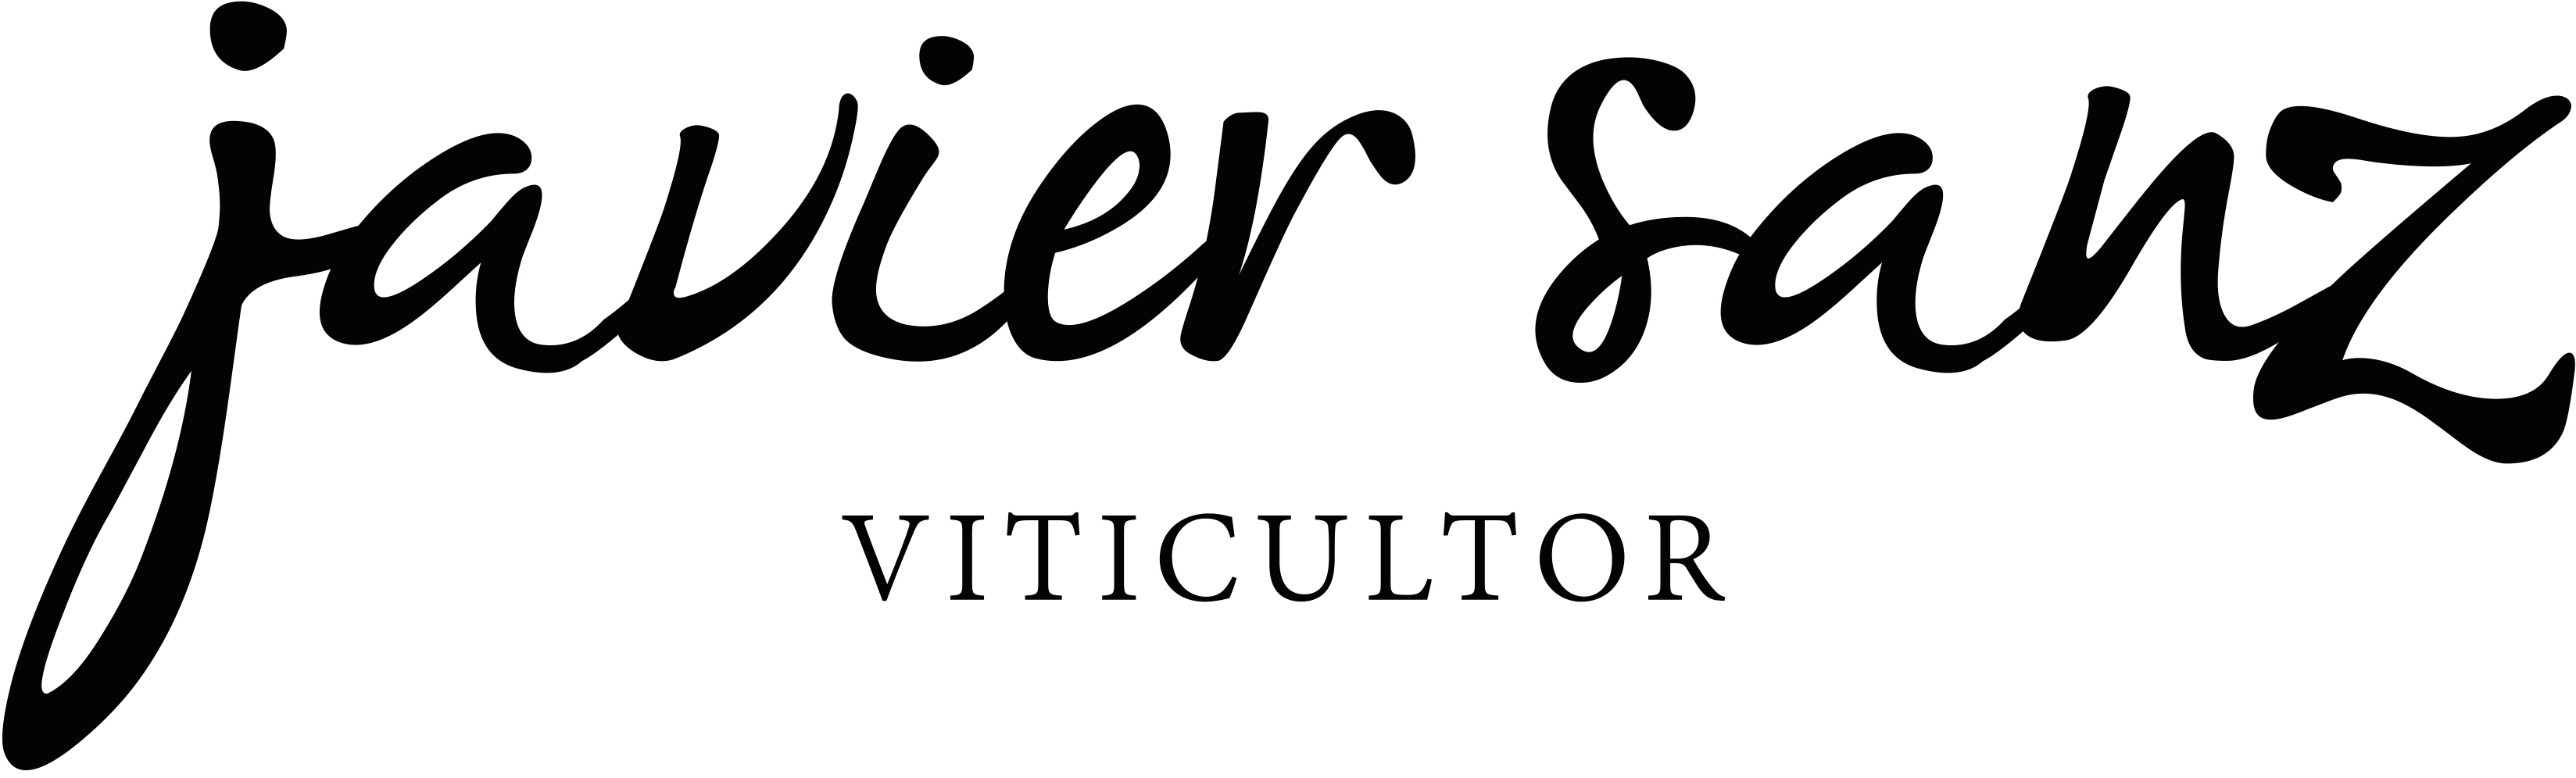 Logo_Bodega_Javier_Sanz